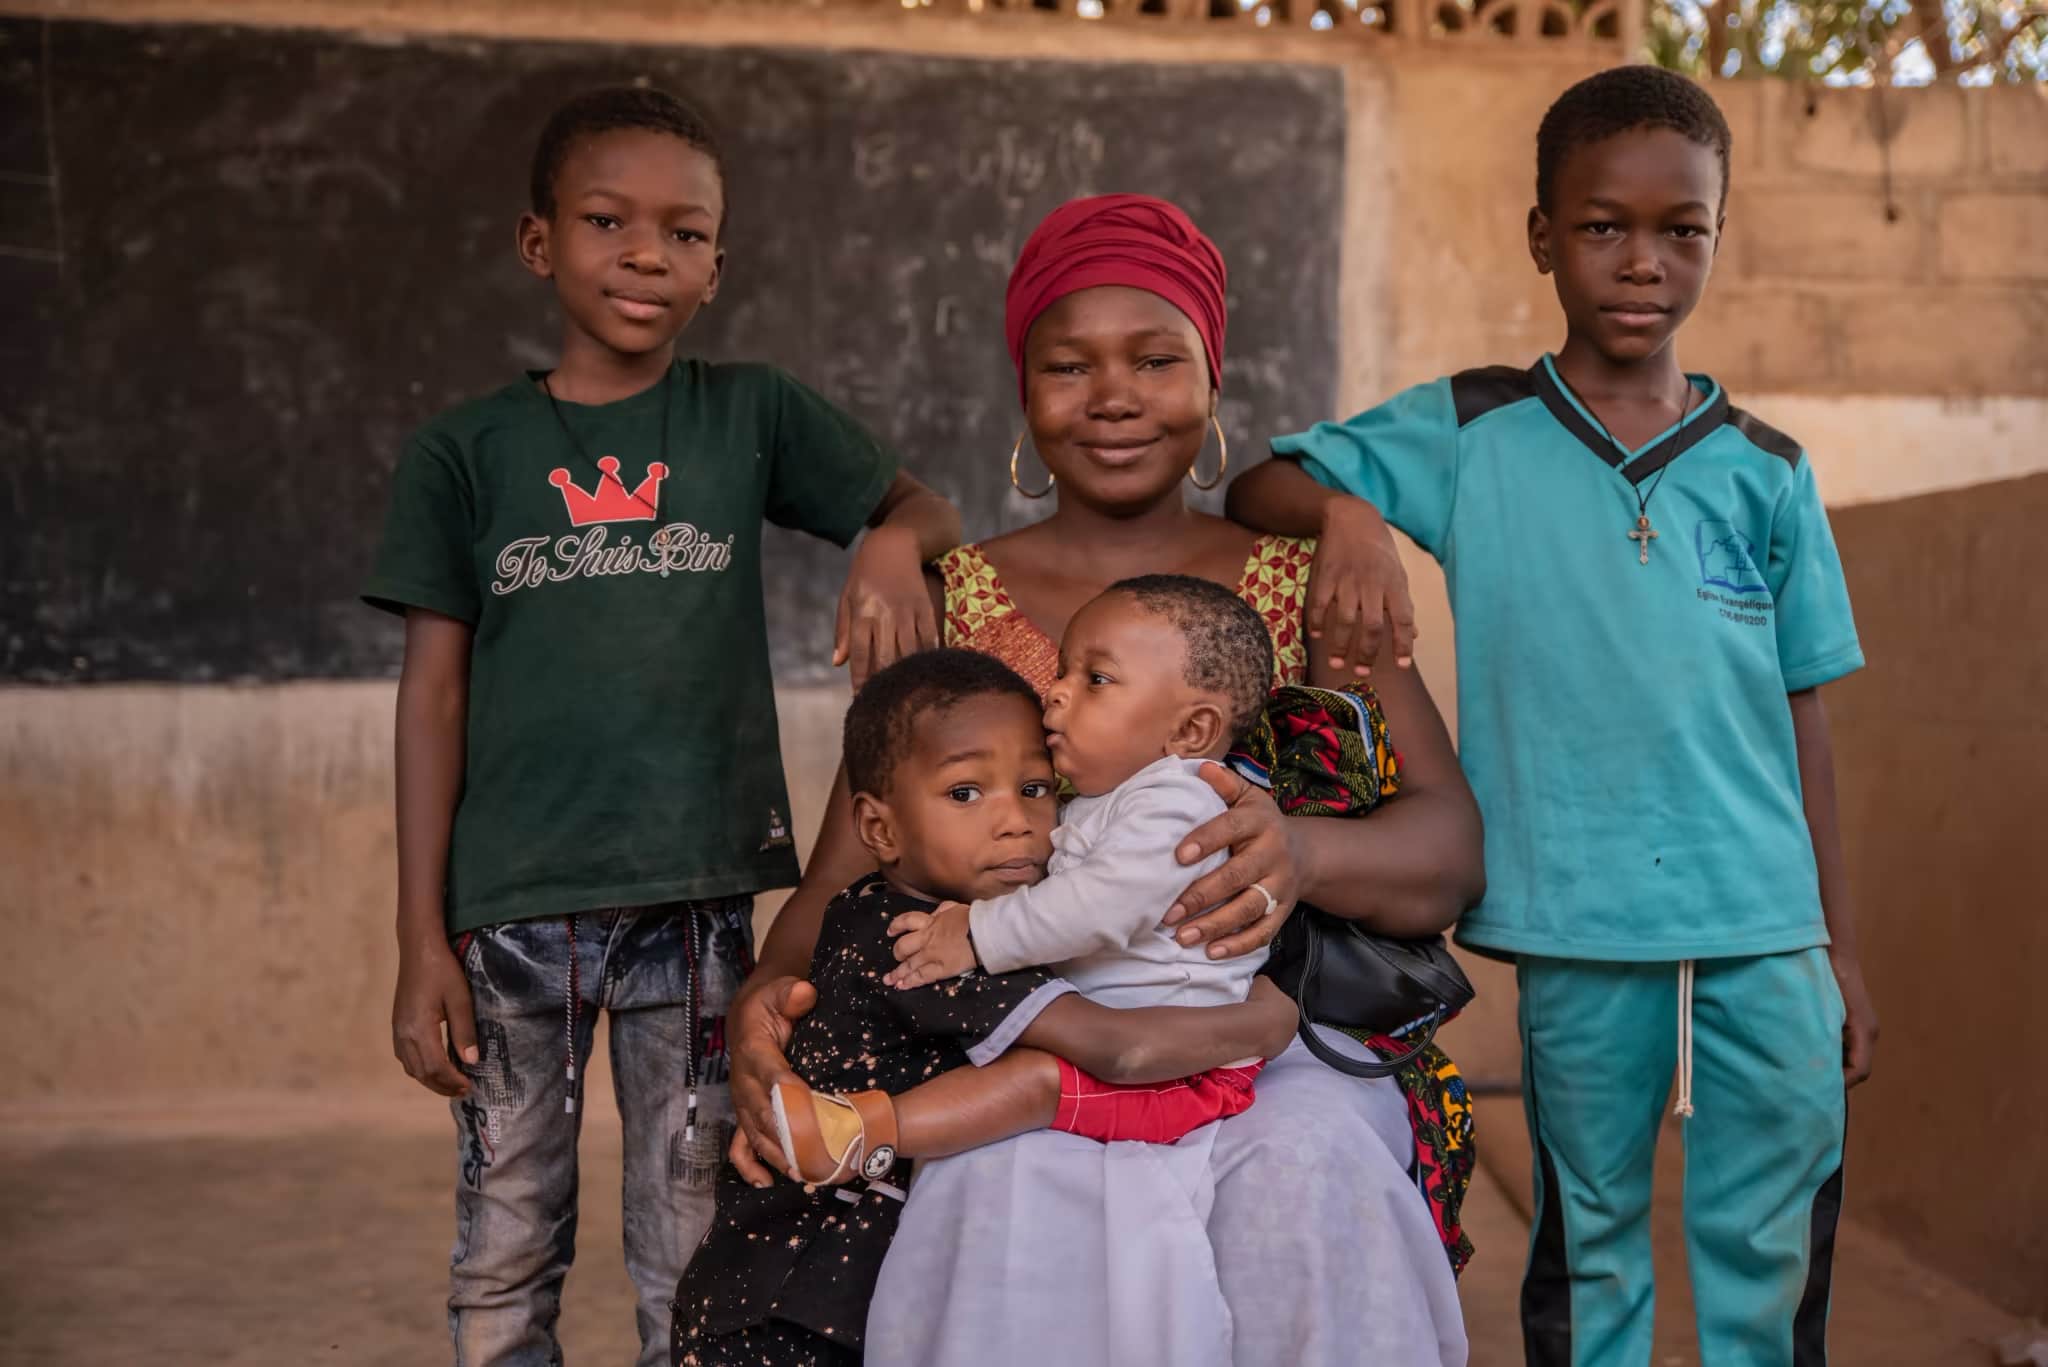 Sostegno dei bambini - Una madre del Burkina Faso siede con i suoi quattro figli che le sorridono e la circondano.